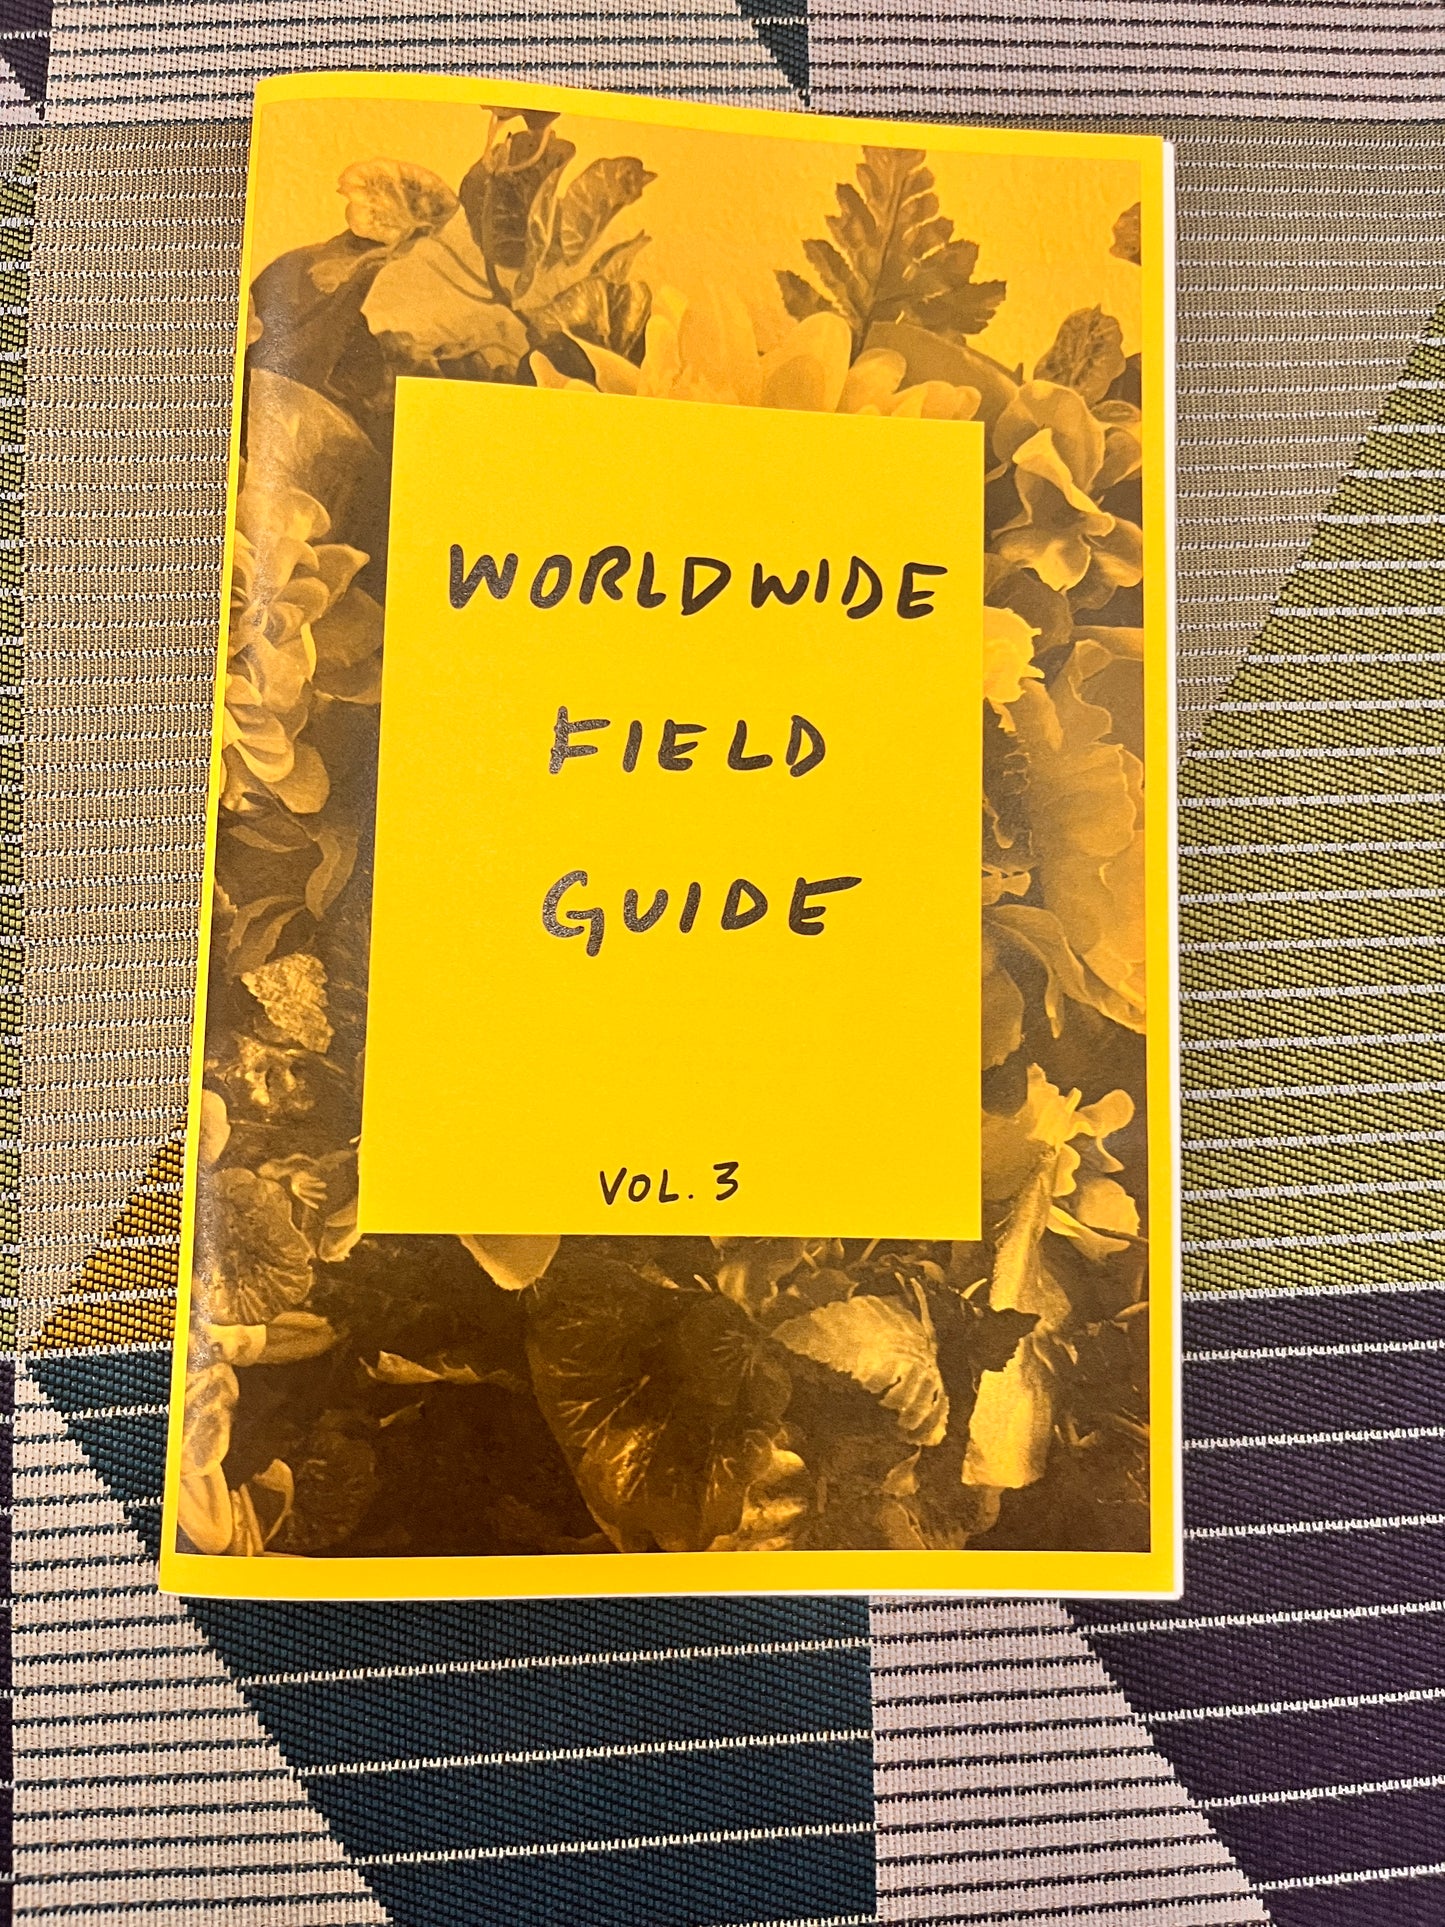 Worldwide Field Guide